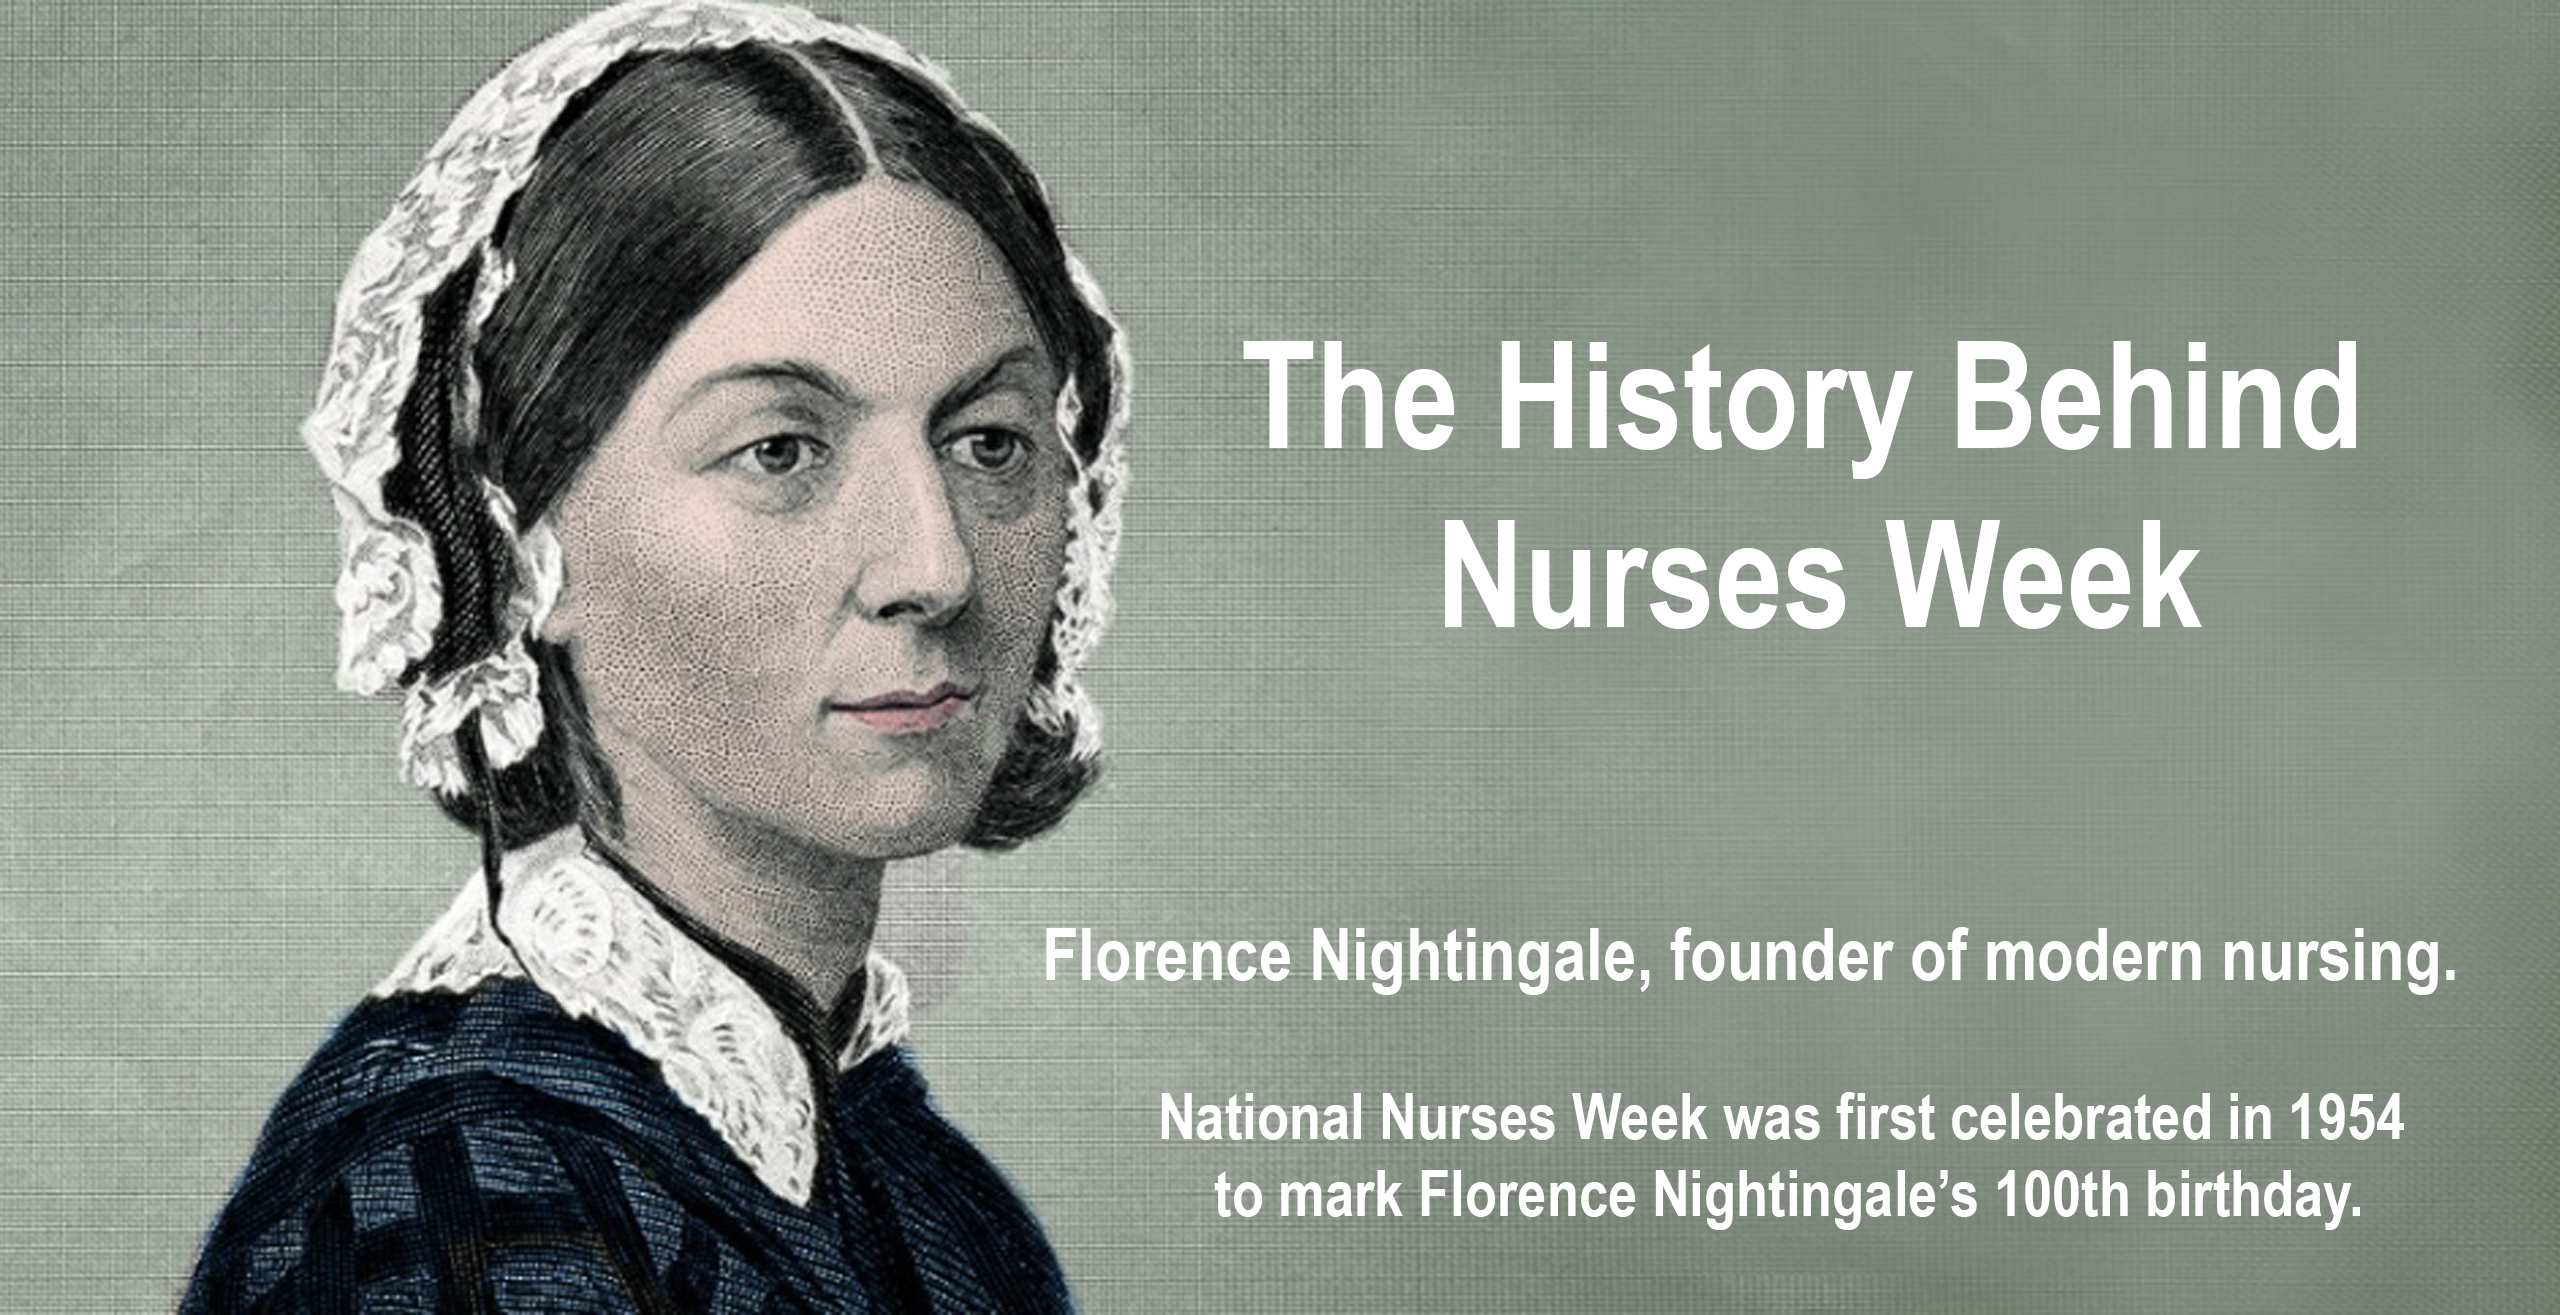 The History Behind Nurses Week